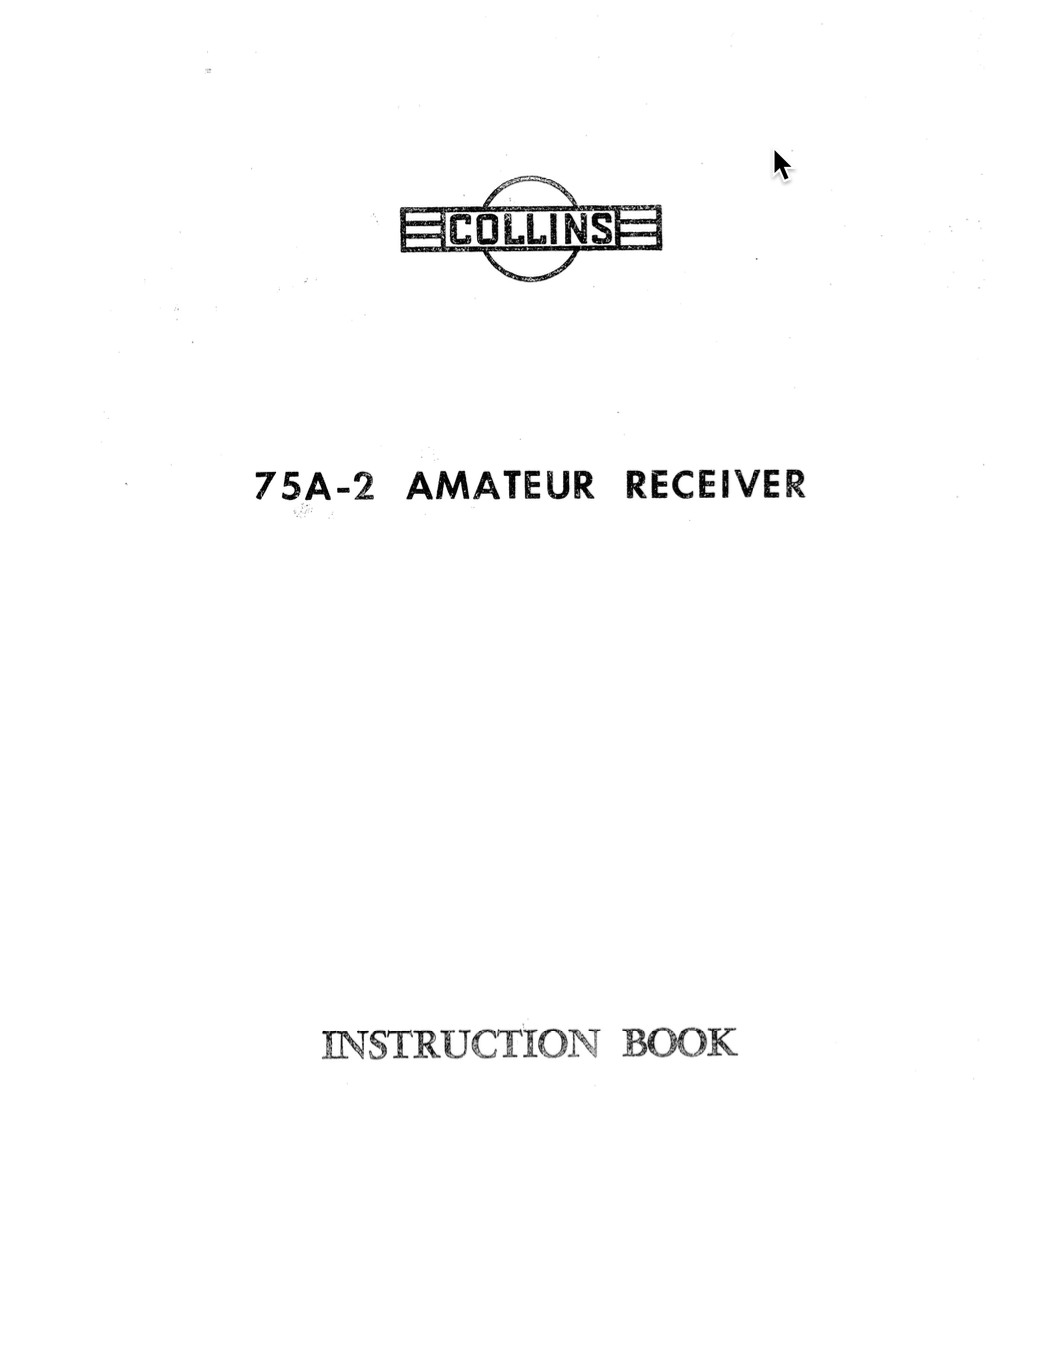 Collins 75A-2 Amateur Receiver - Instruction Manual (1951-09)